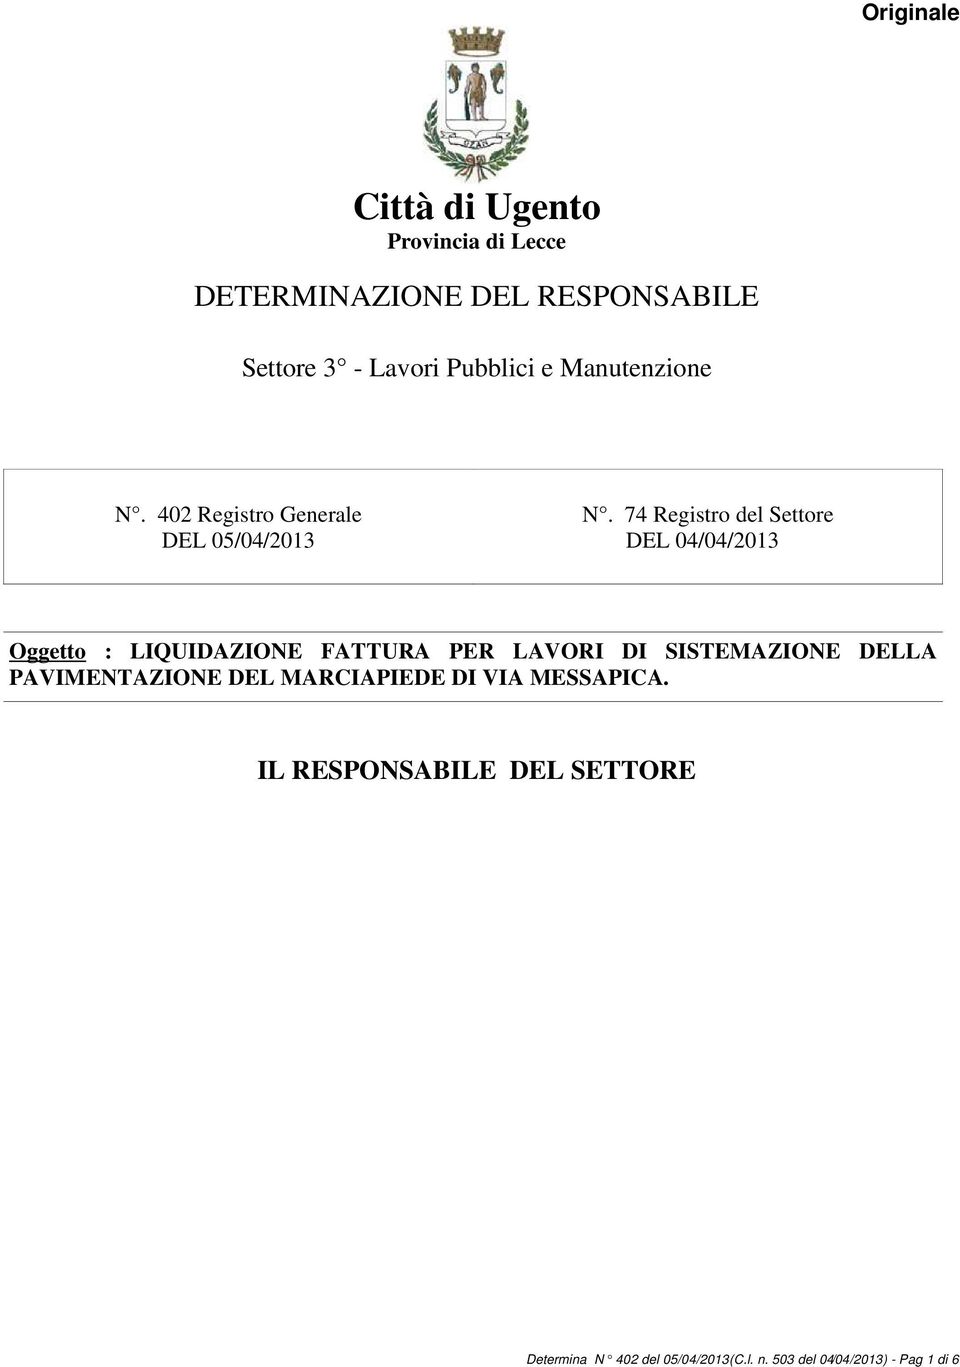 74 Registro del Settore DEL 04/04/2013 Oggetto : LIQUIDAZIONE FATTURA PER LAVORI DI SISTEMAZIONE DELLA